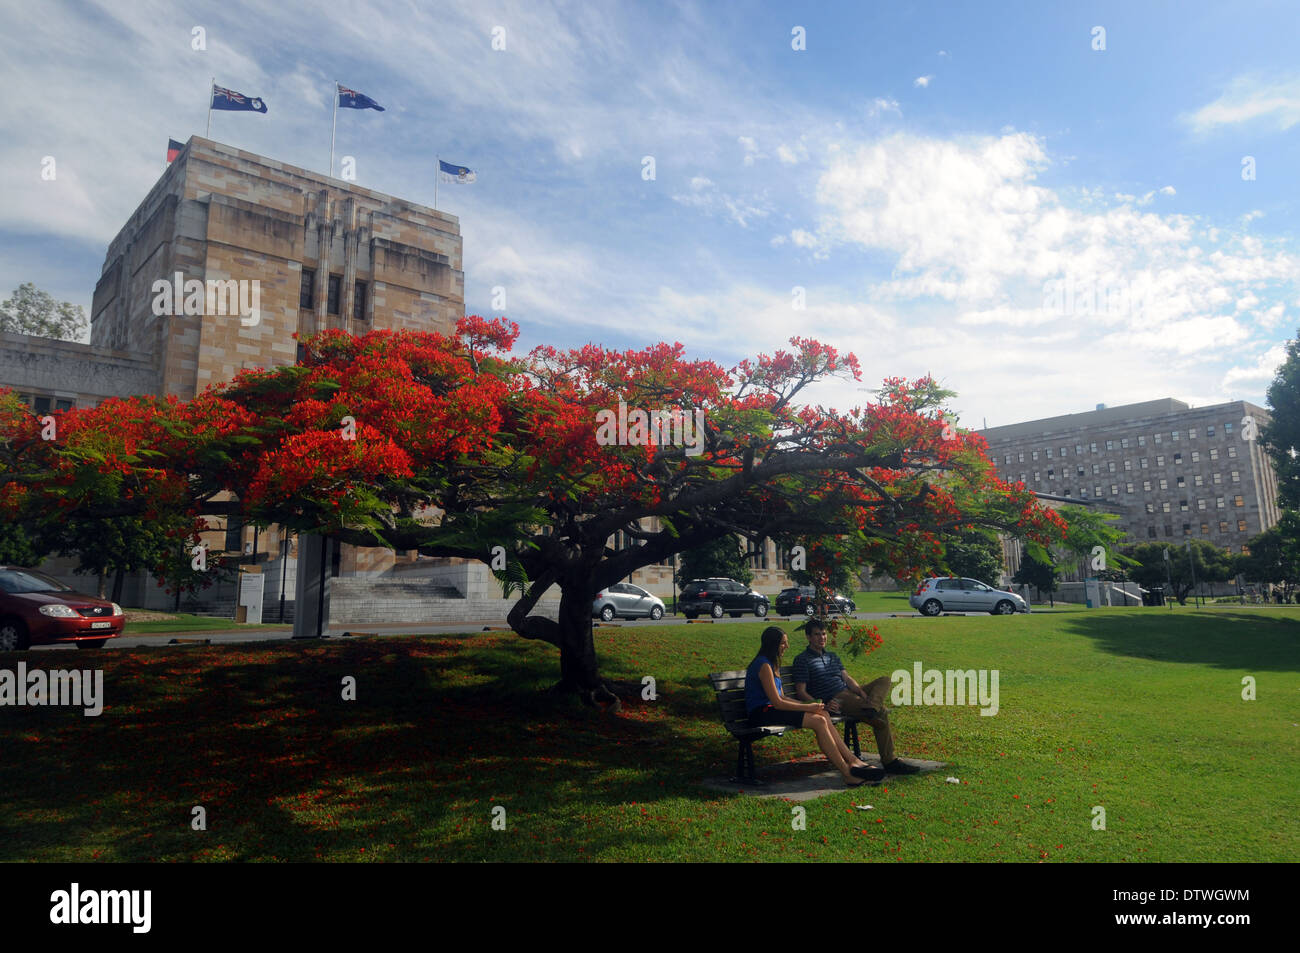 Étudiants et arbre en fleurs (Ponciana) sur le campus de l'Université de Queensland, Brisbane, Australie. Aucune communication ou MR Banque D'Images